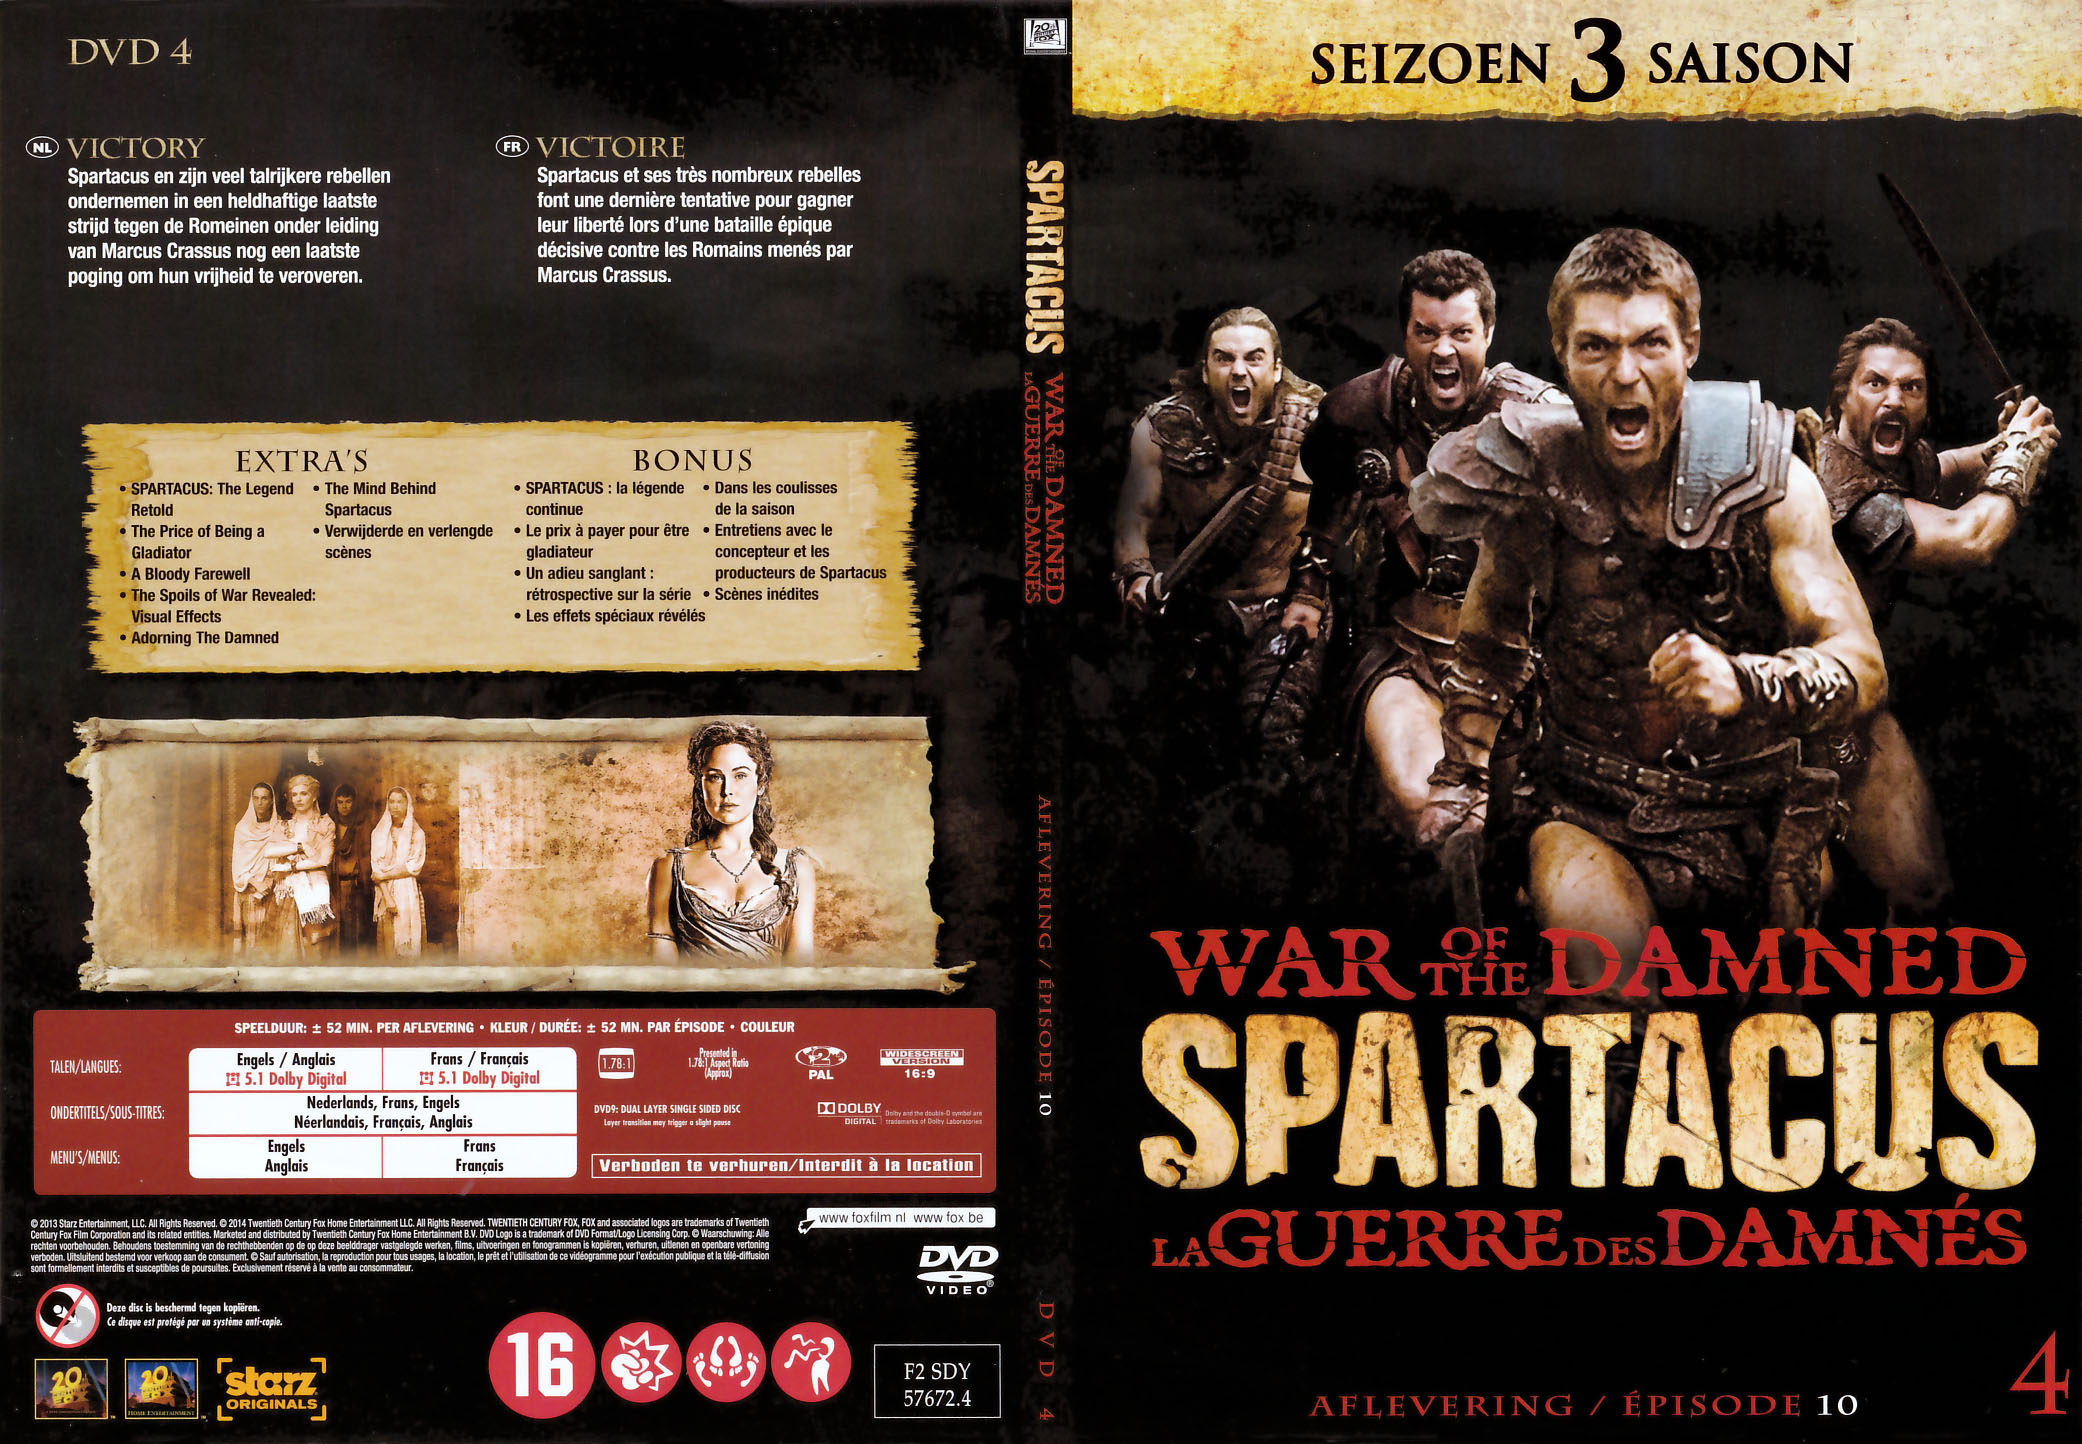 Jaquette DVD Spartacus La guerre des damns Saison 3 DVD 4